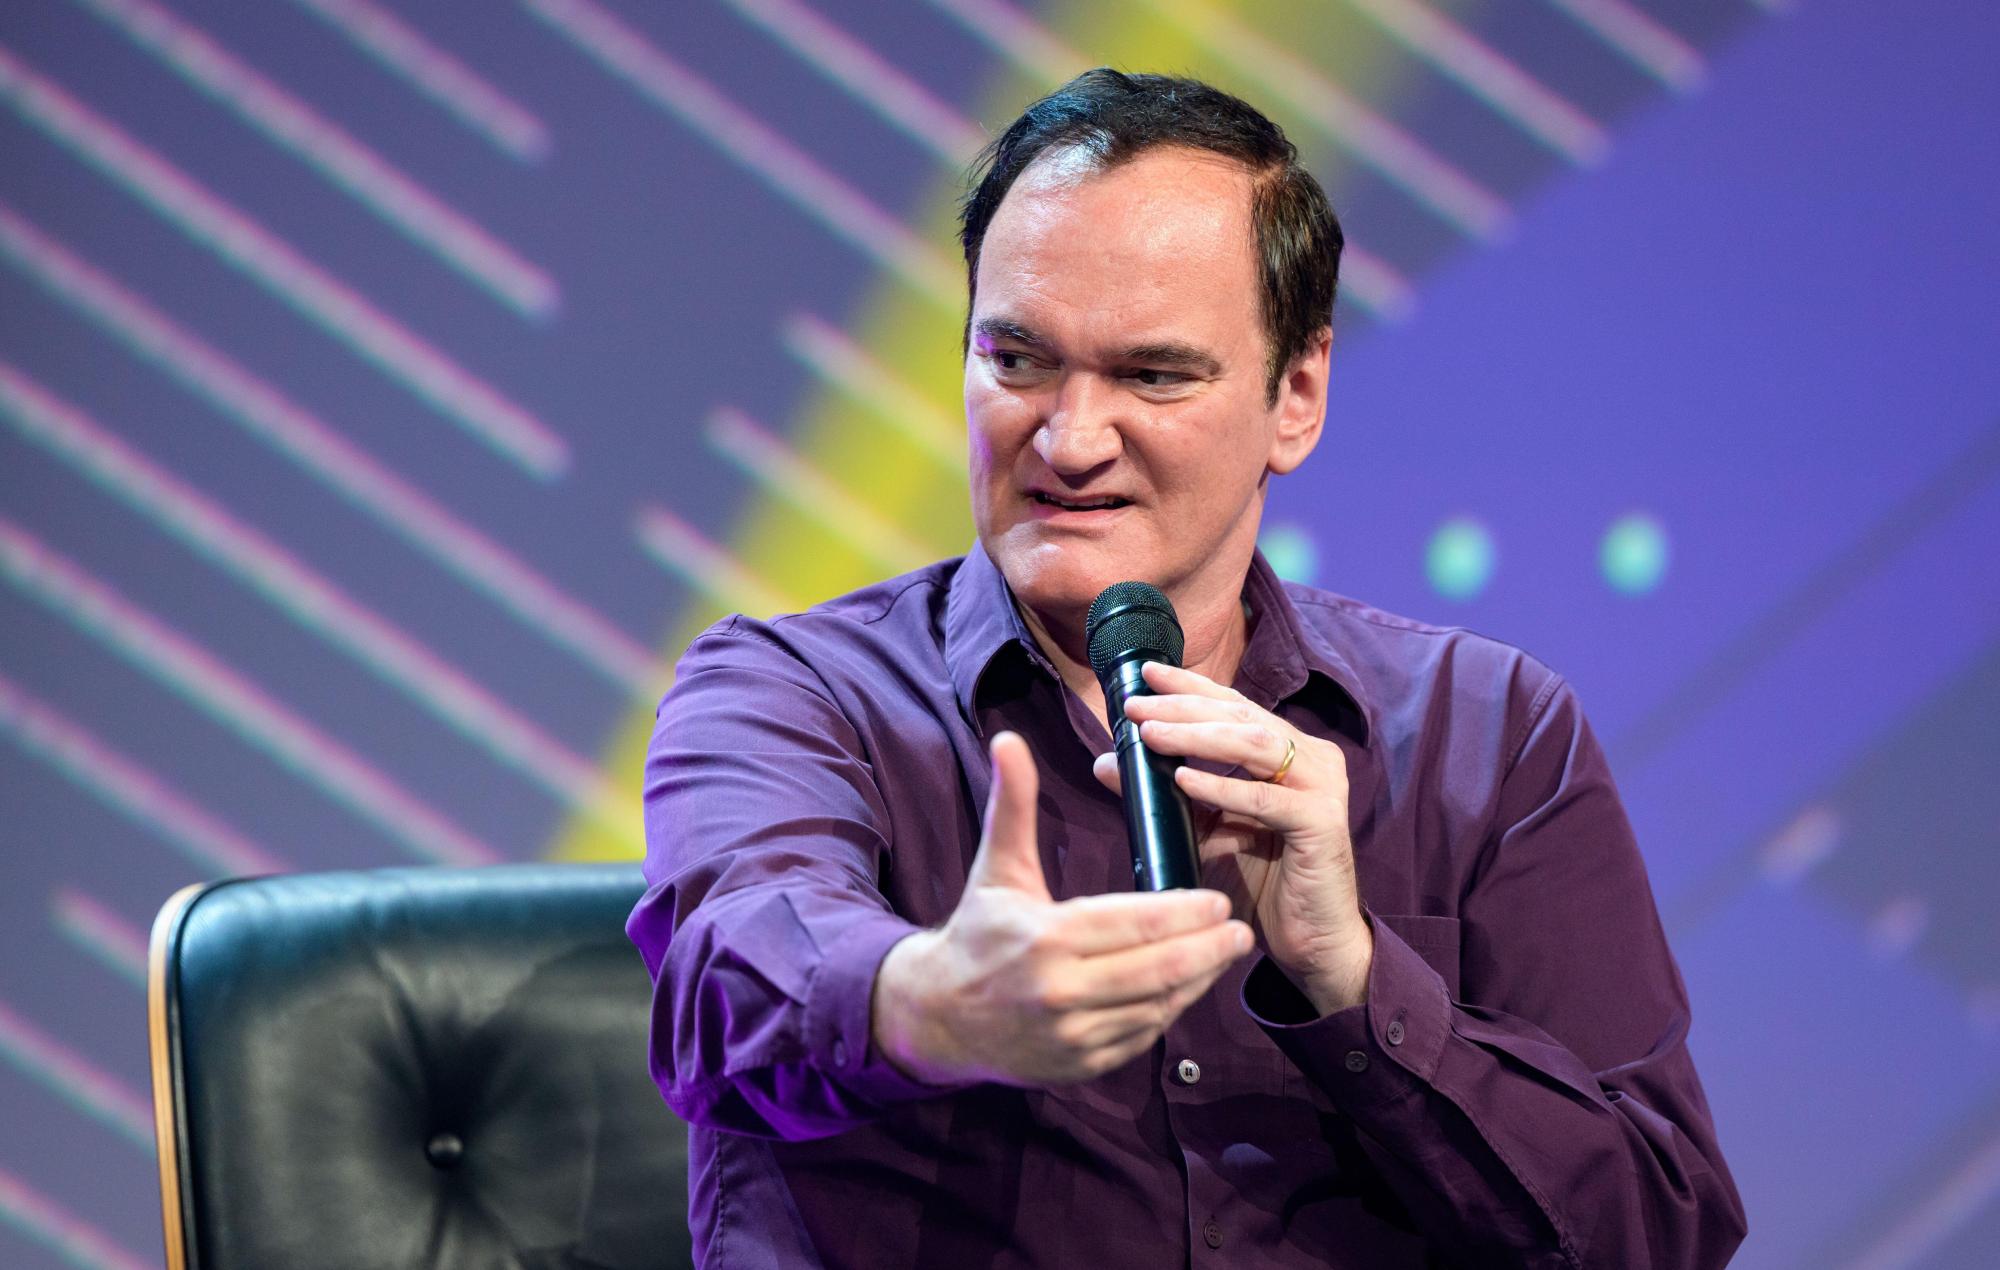 Quentin Tarantino vio 'Deliverance' a los 7 años: "No es para tanto"